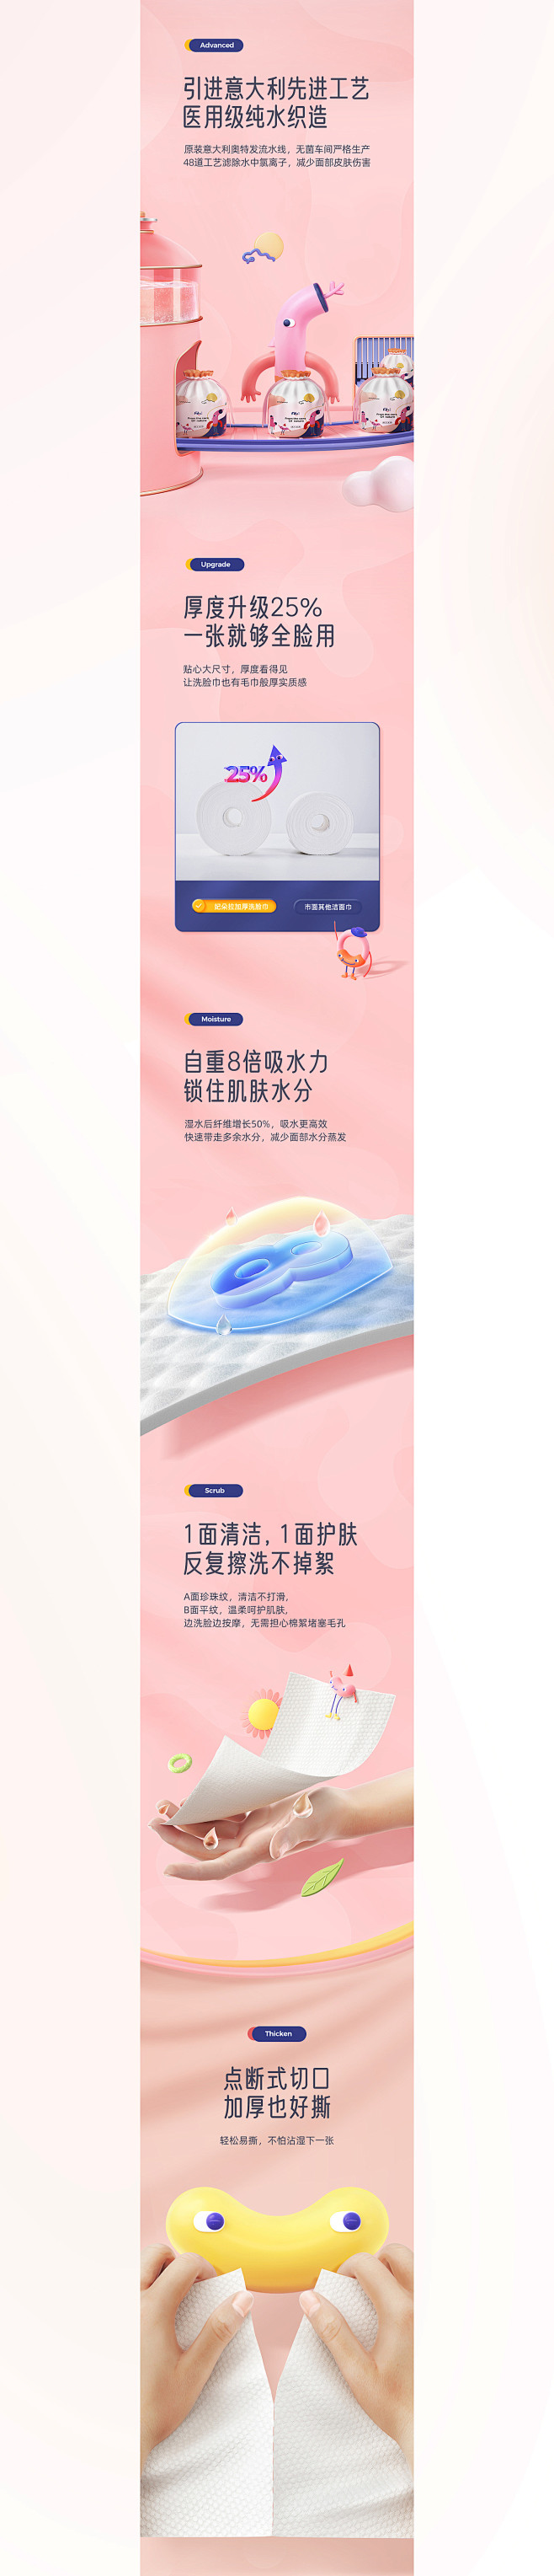 妃朵拉洗脸巾详情页-潜云设计团队